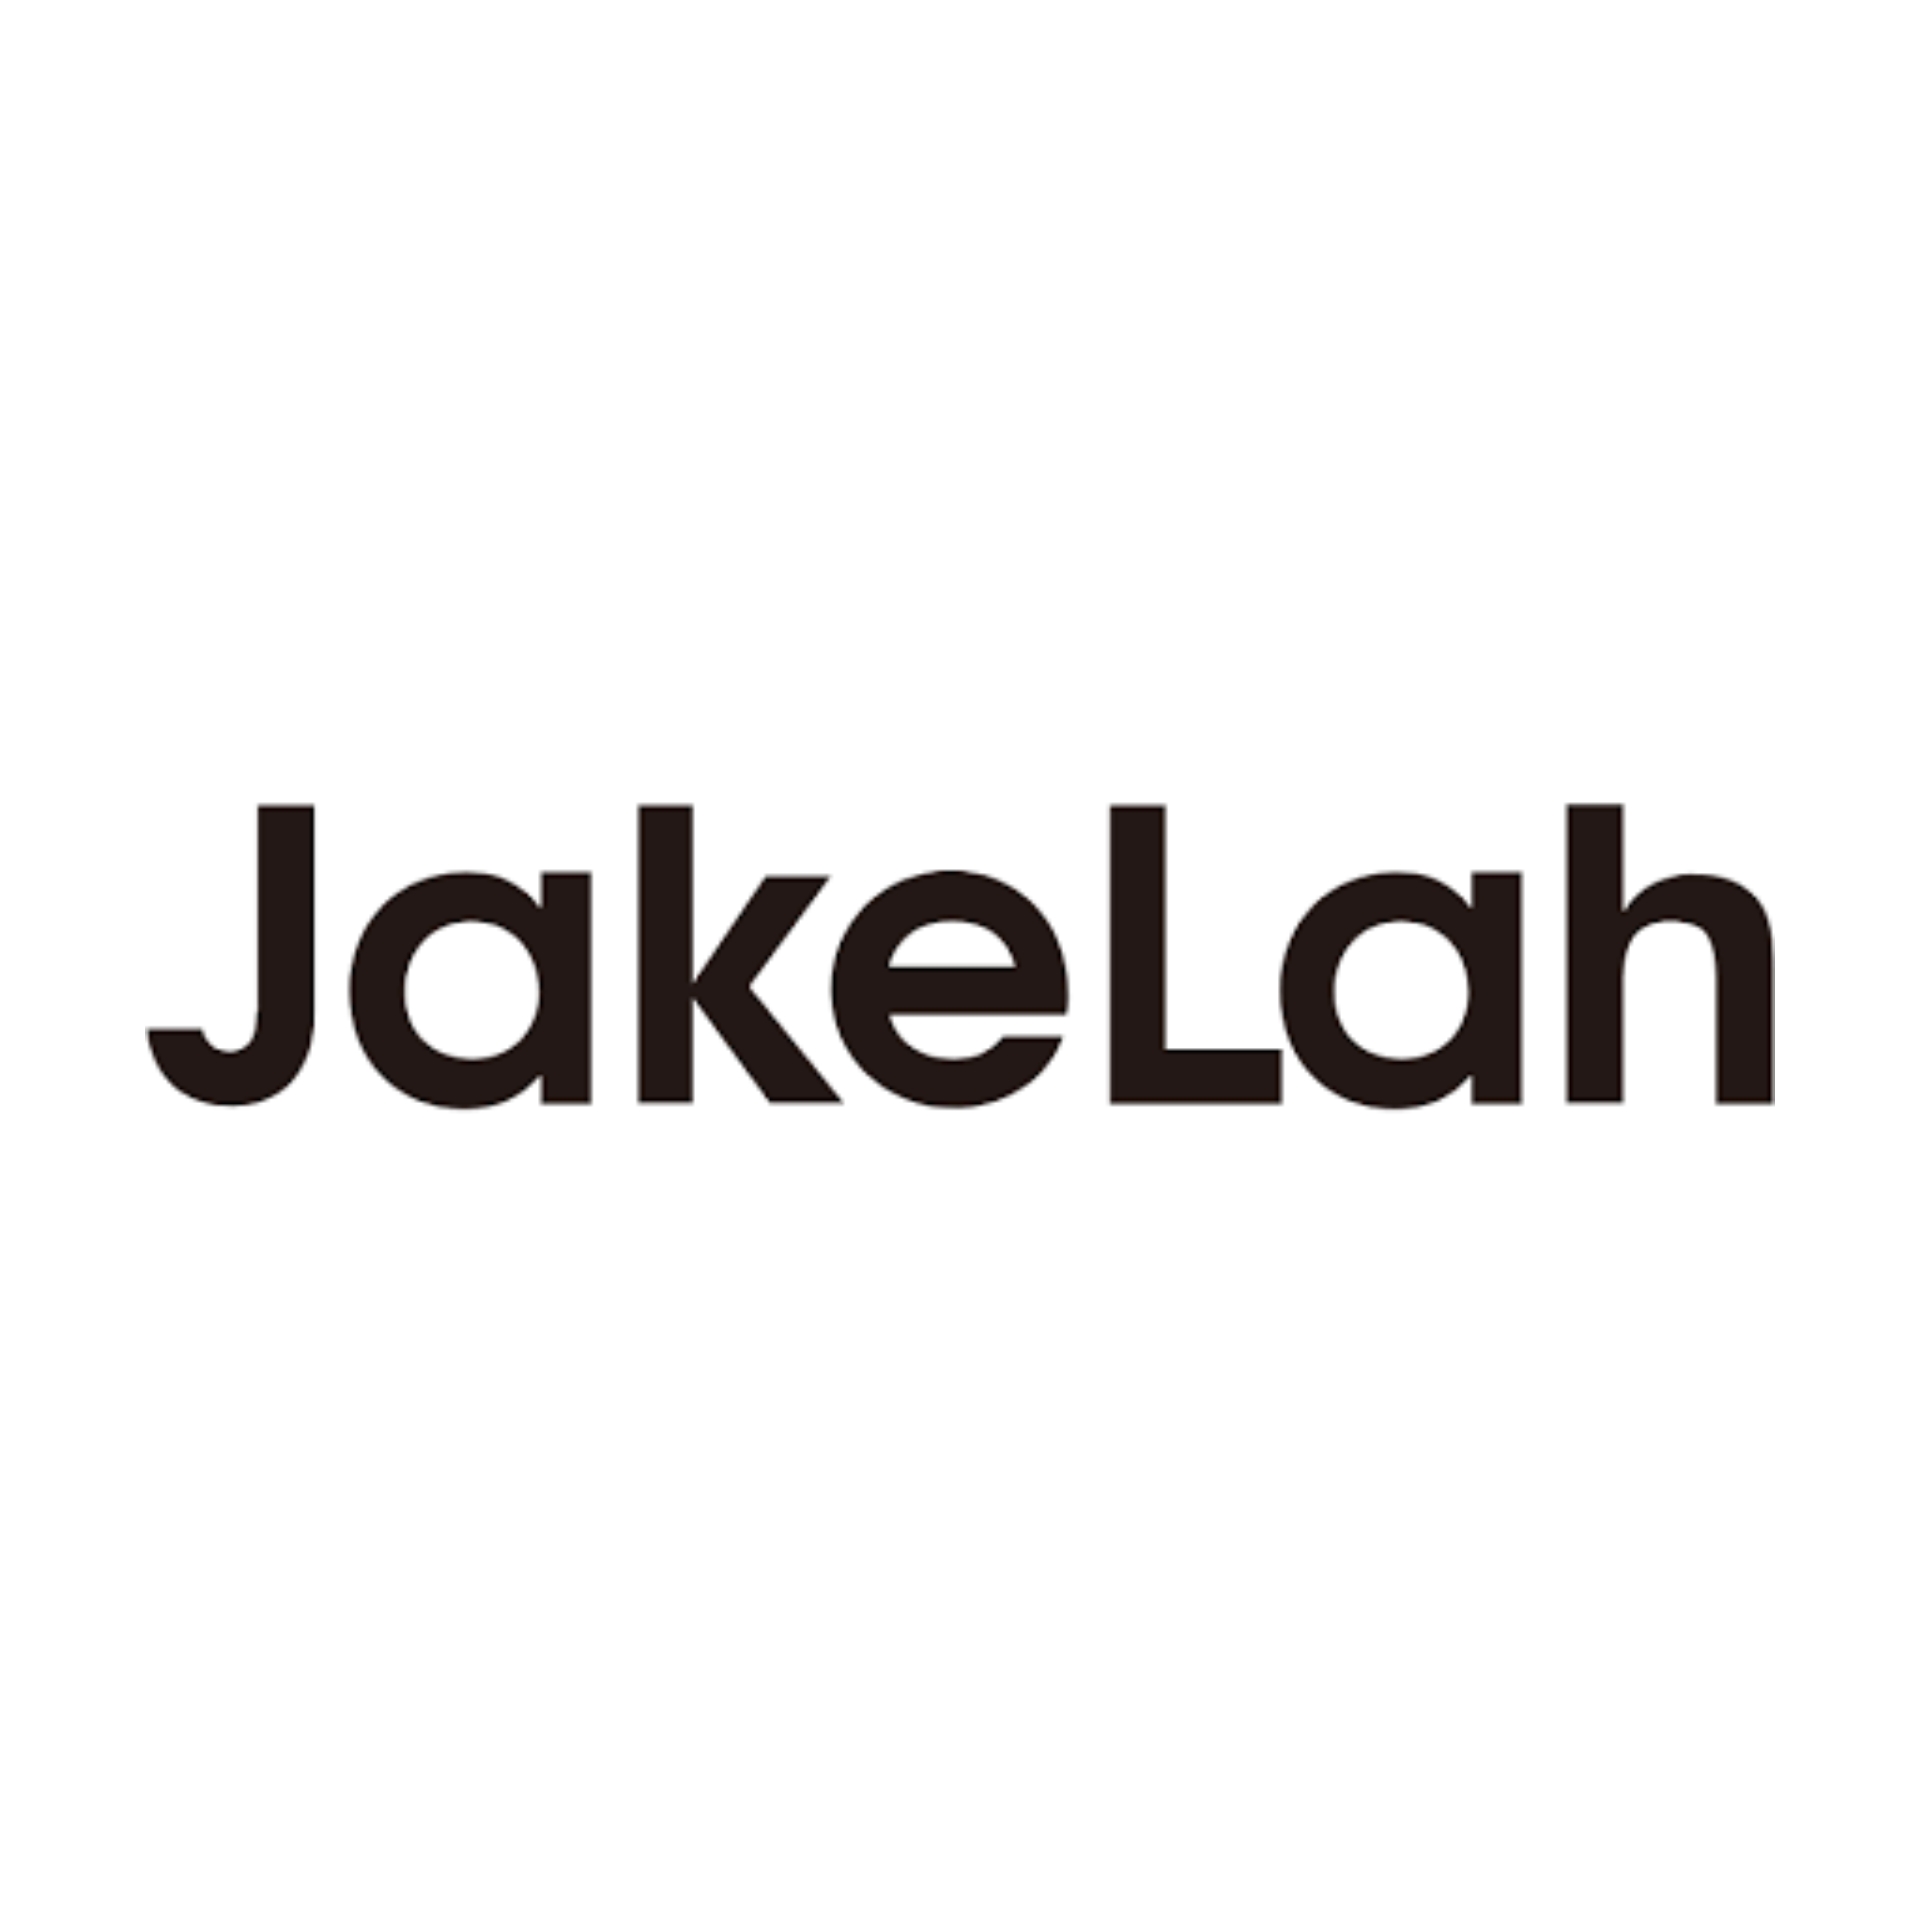 Brand : JakeLah